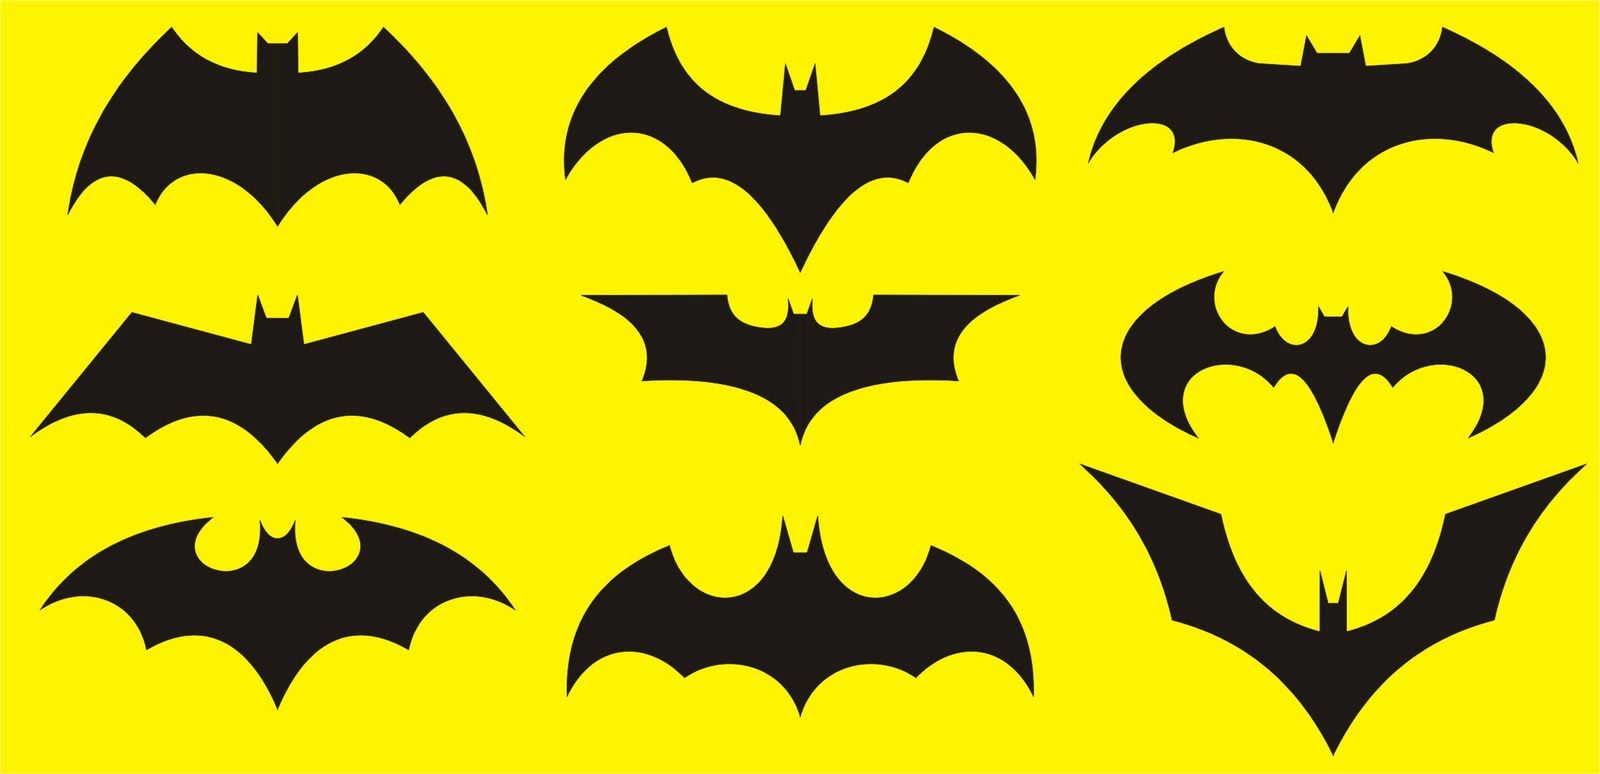 batman clipart bat cave